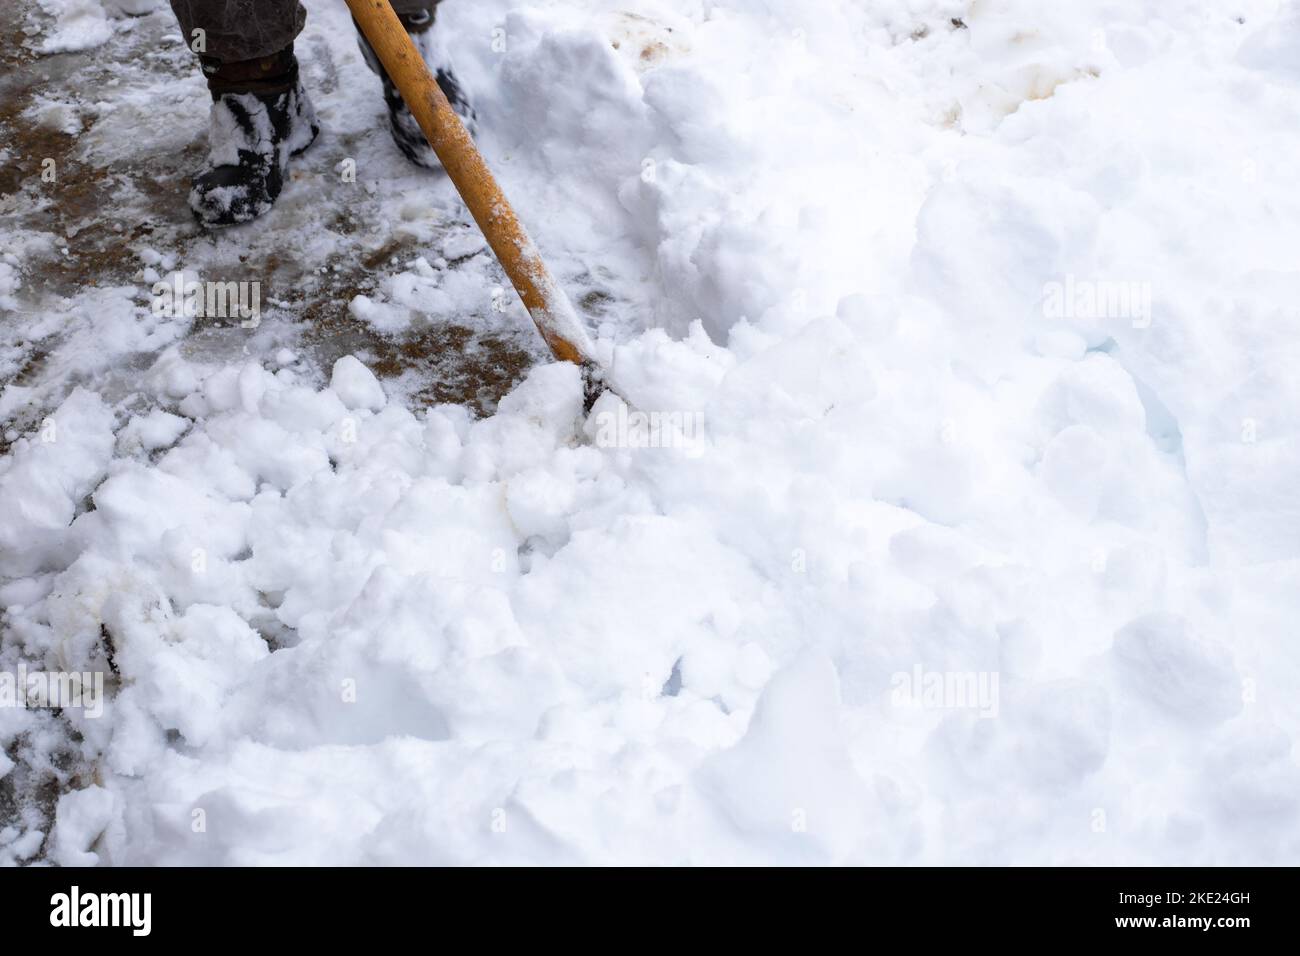 Ein Mann reinigt im Winter Schnee im Hof des Hauses. Ein Mann reinigt den  Schnee mit einer Schaufel Stockfotografie - Alamy